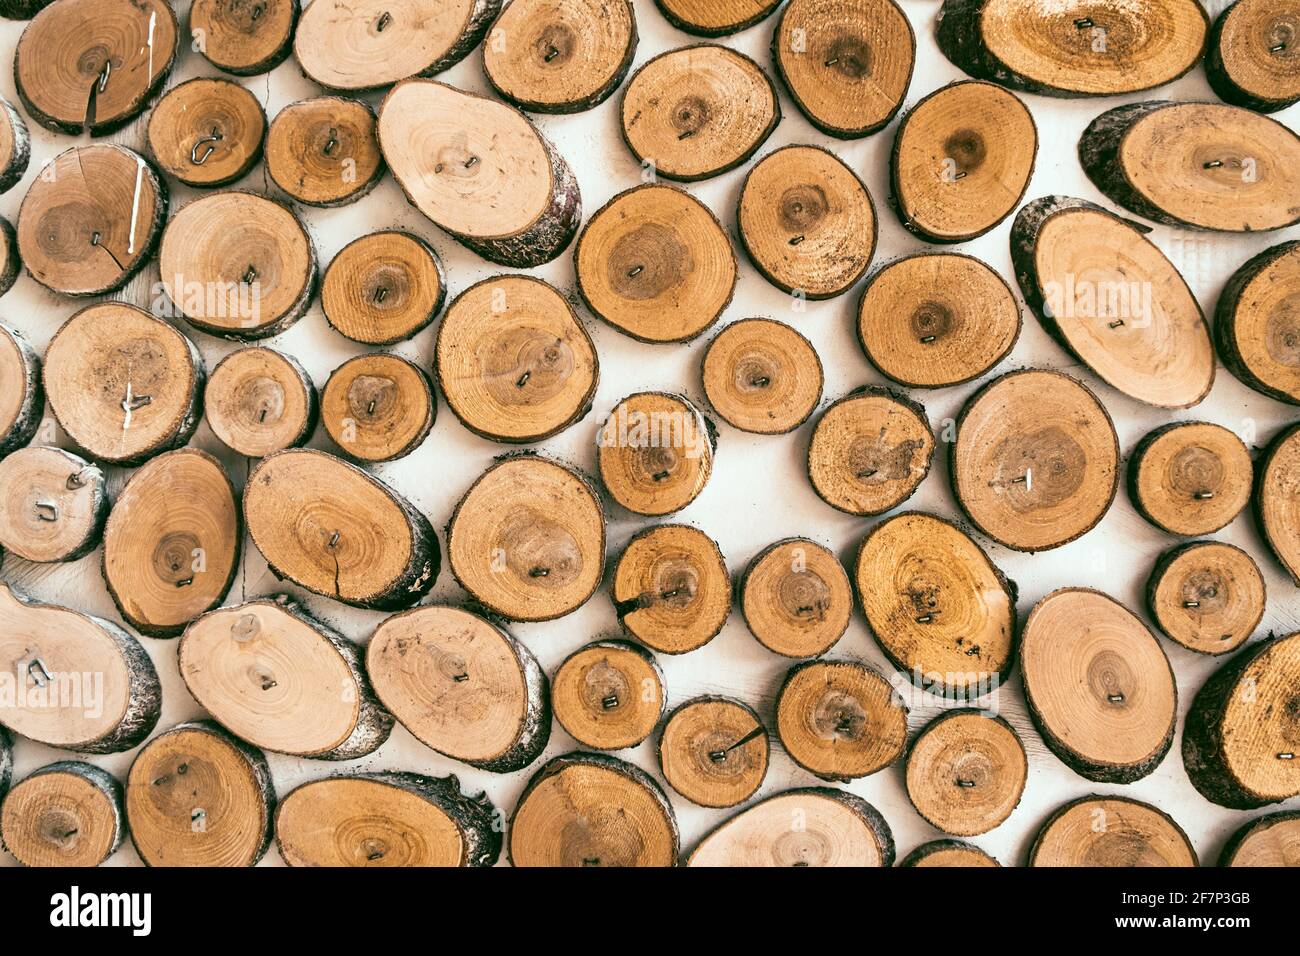 https://c8.alamy.com/compes/2f7p3gb/seccion-transversal-del-fondo-de-troncos-de-arbol-textura-de-madera-troncos-redondos-de-madera-decoracion-del-arbol-de-corte-para-decoracion-interior-o-como-fondo-2f7p3gb.jpg